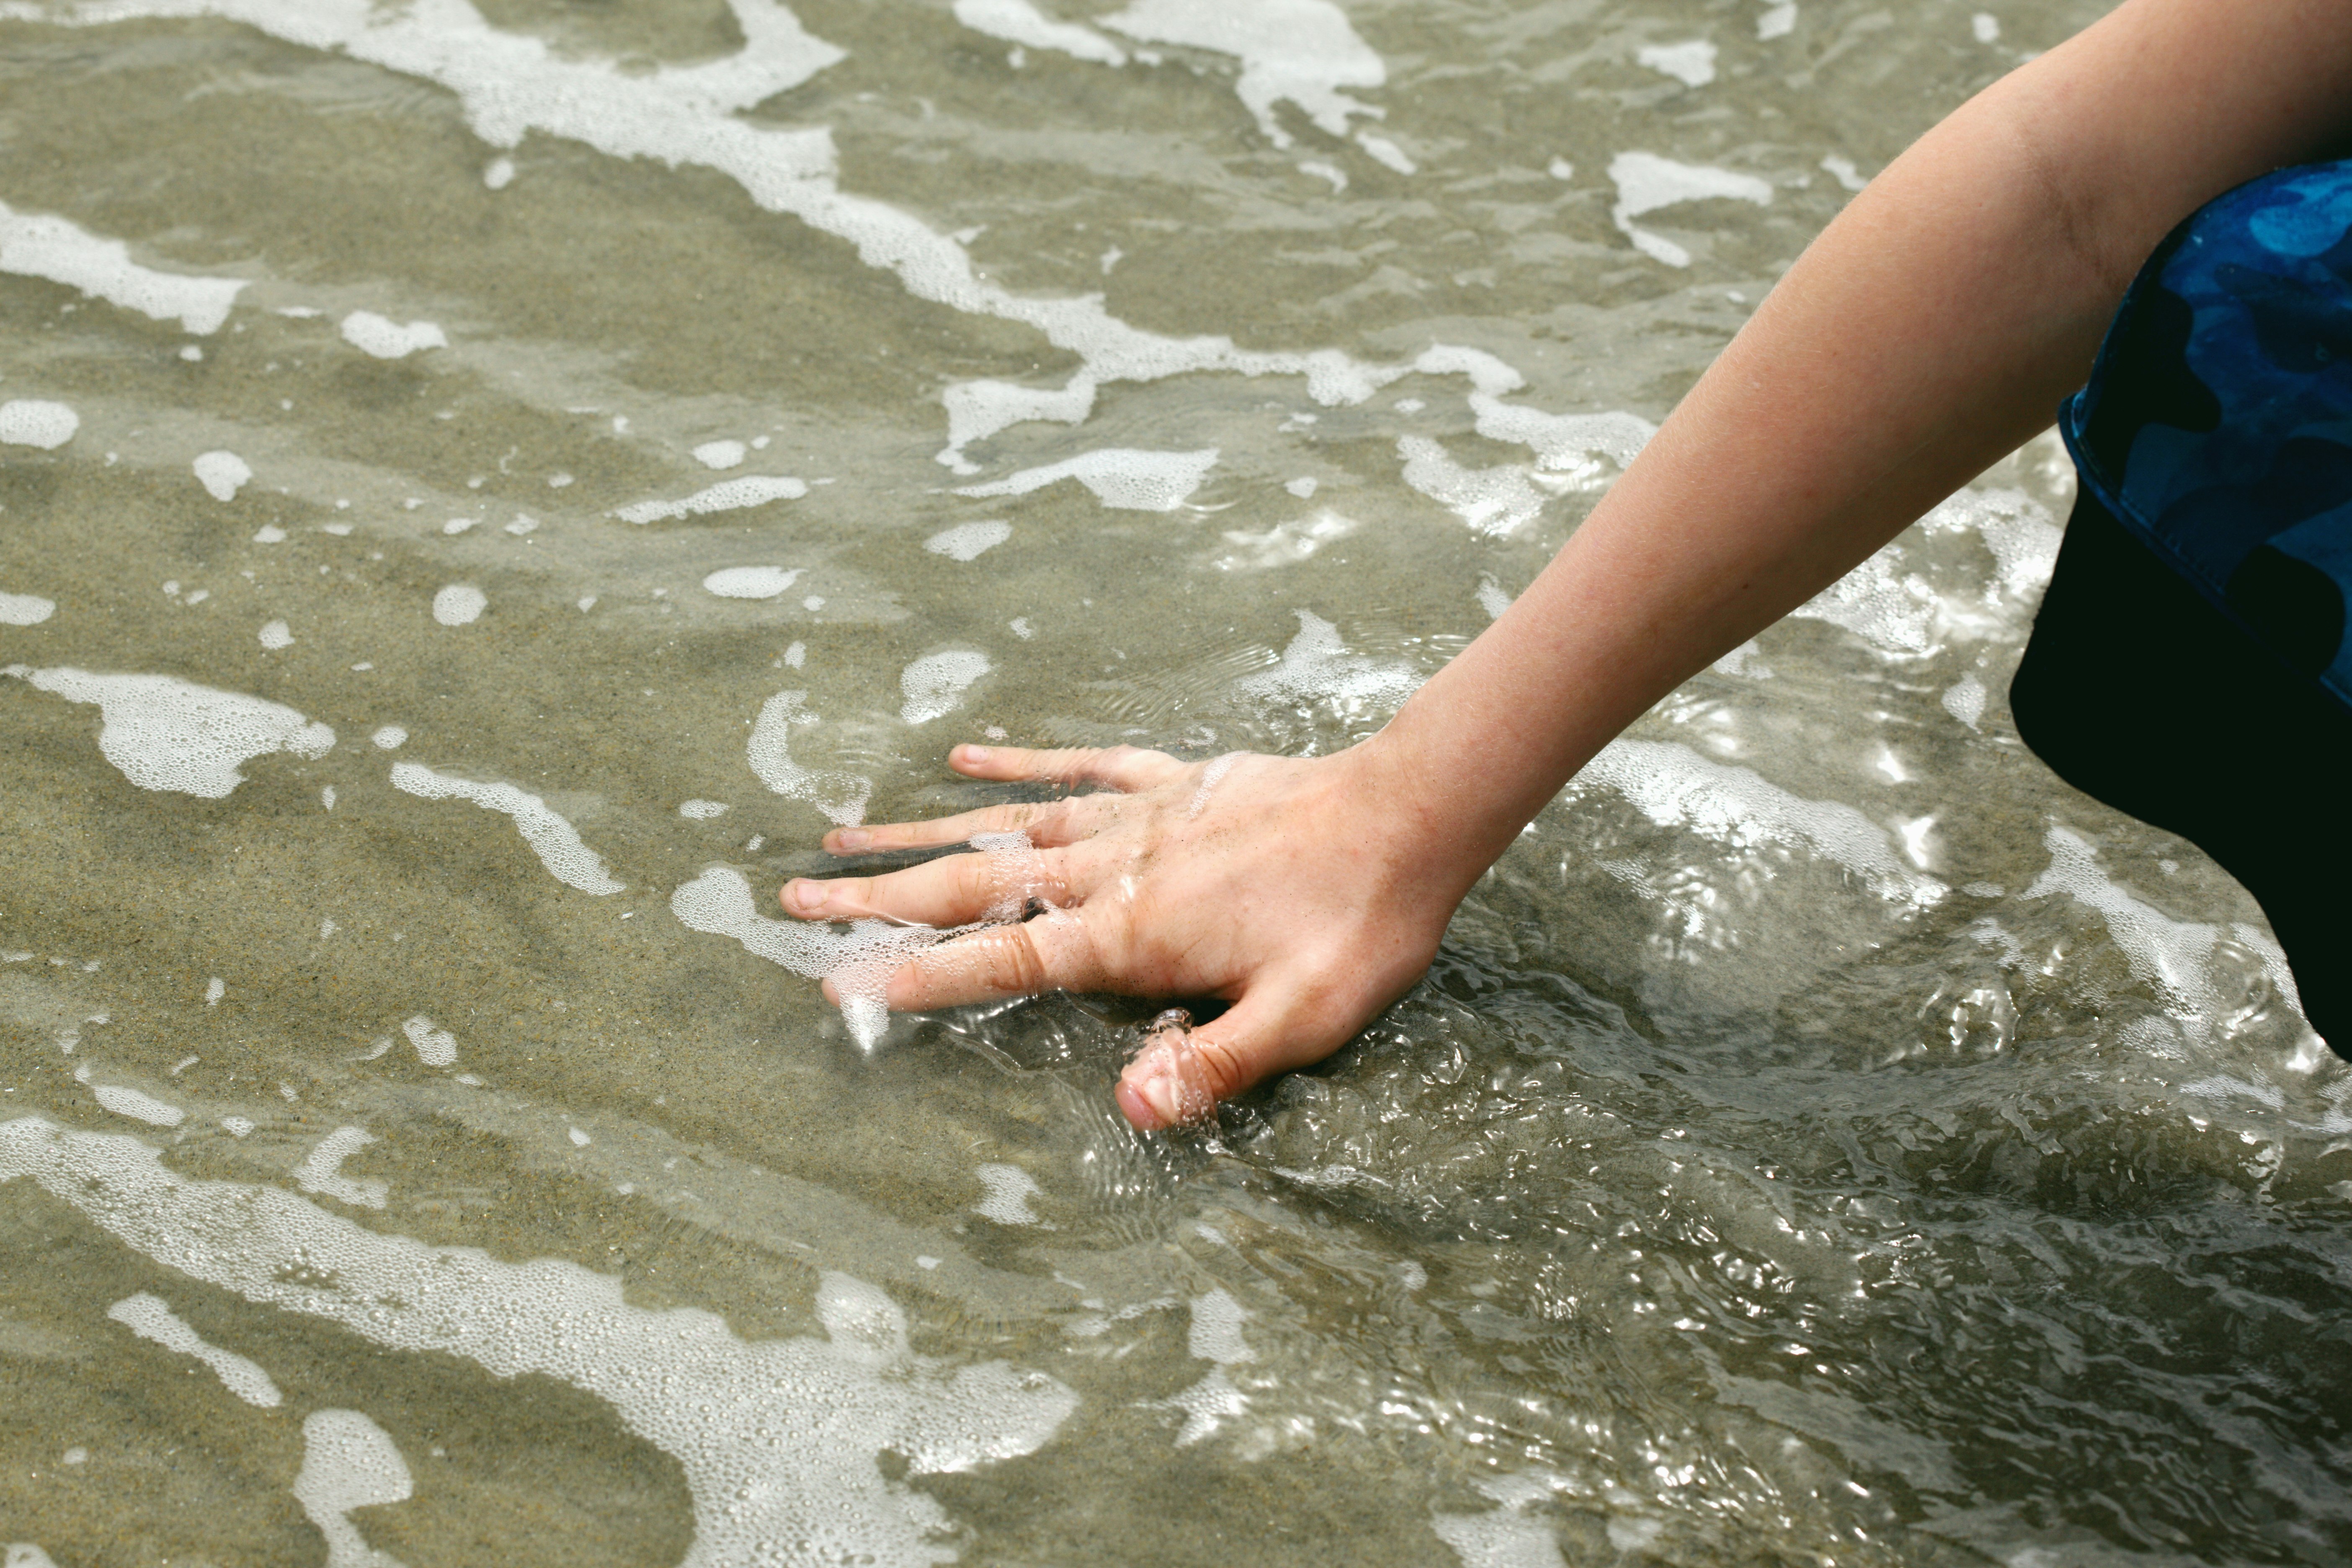 Hand in ocean water.